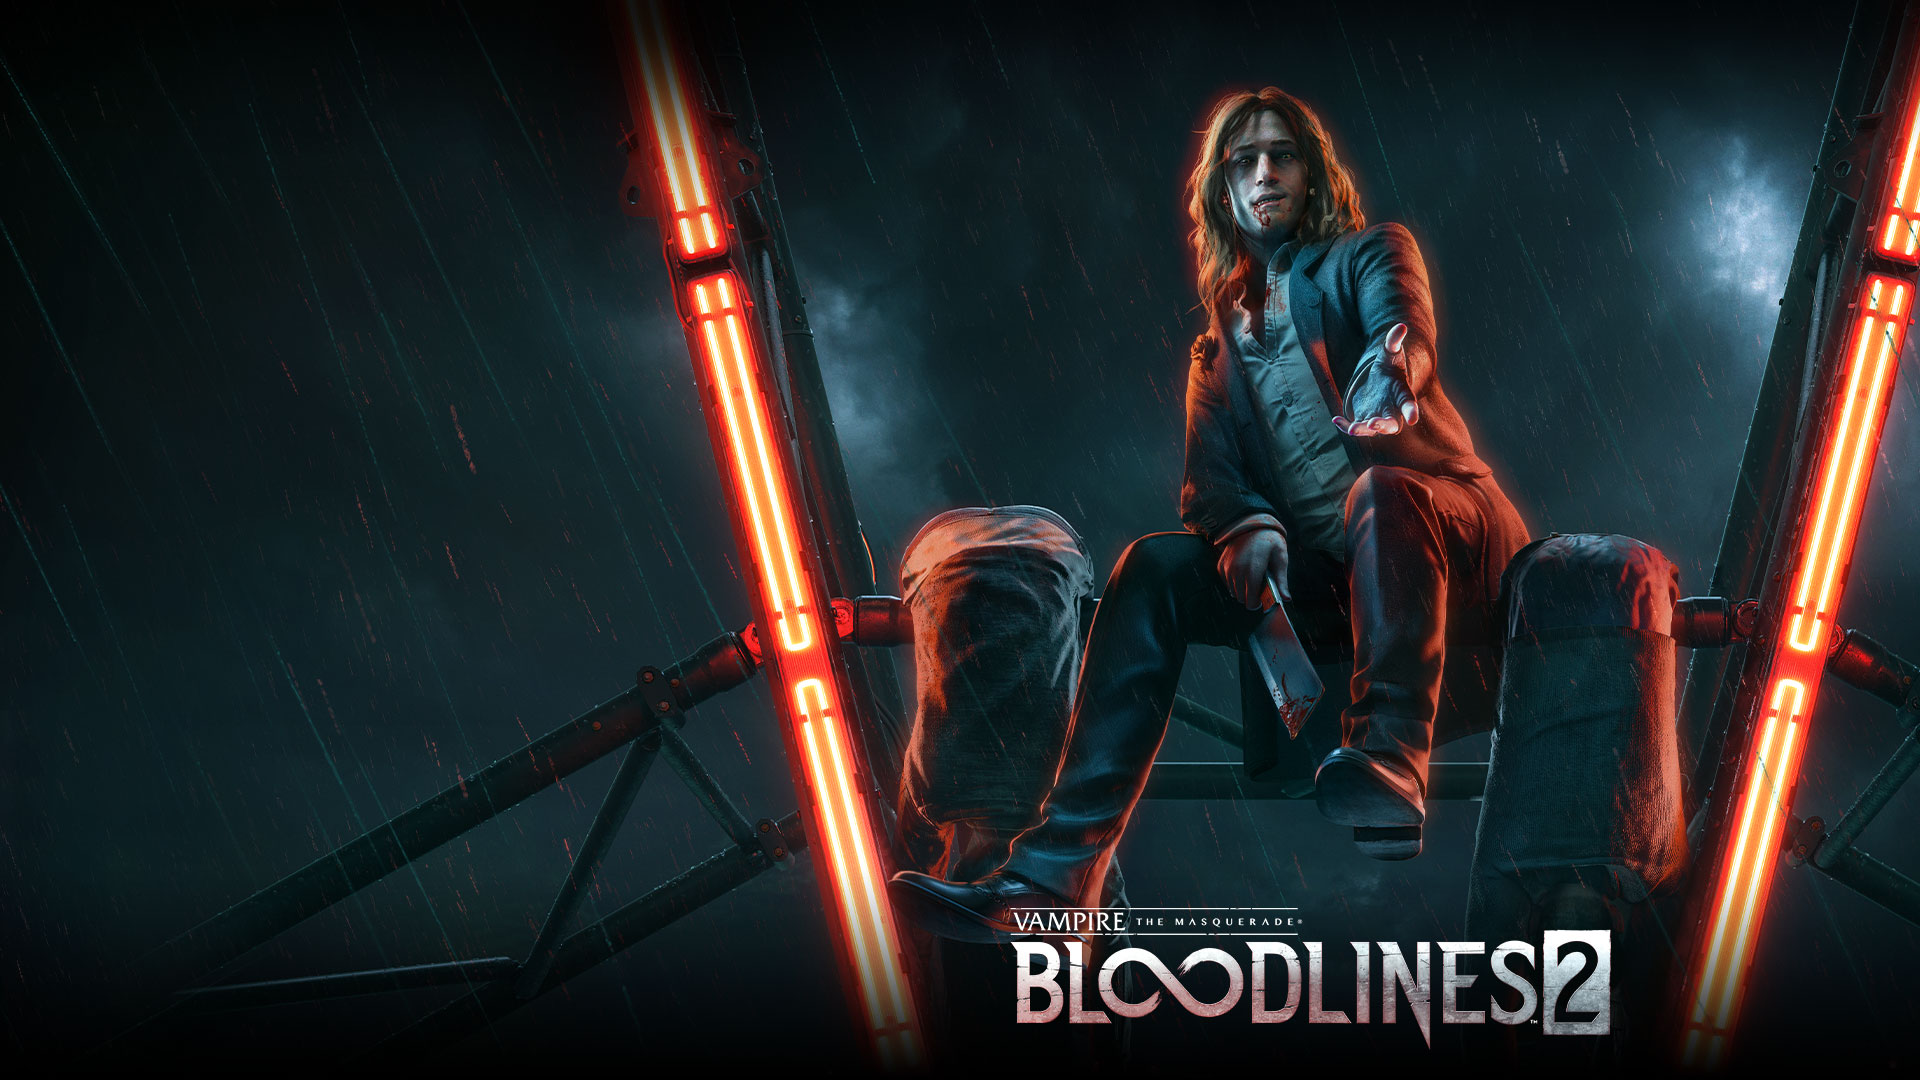 Vampire the Masquerade Bloodlines 2, En vampyr sitter på en stång i ett pariserhjul och ler.